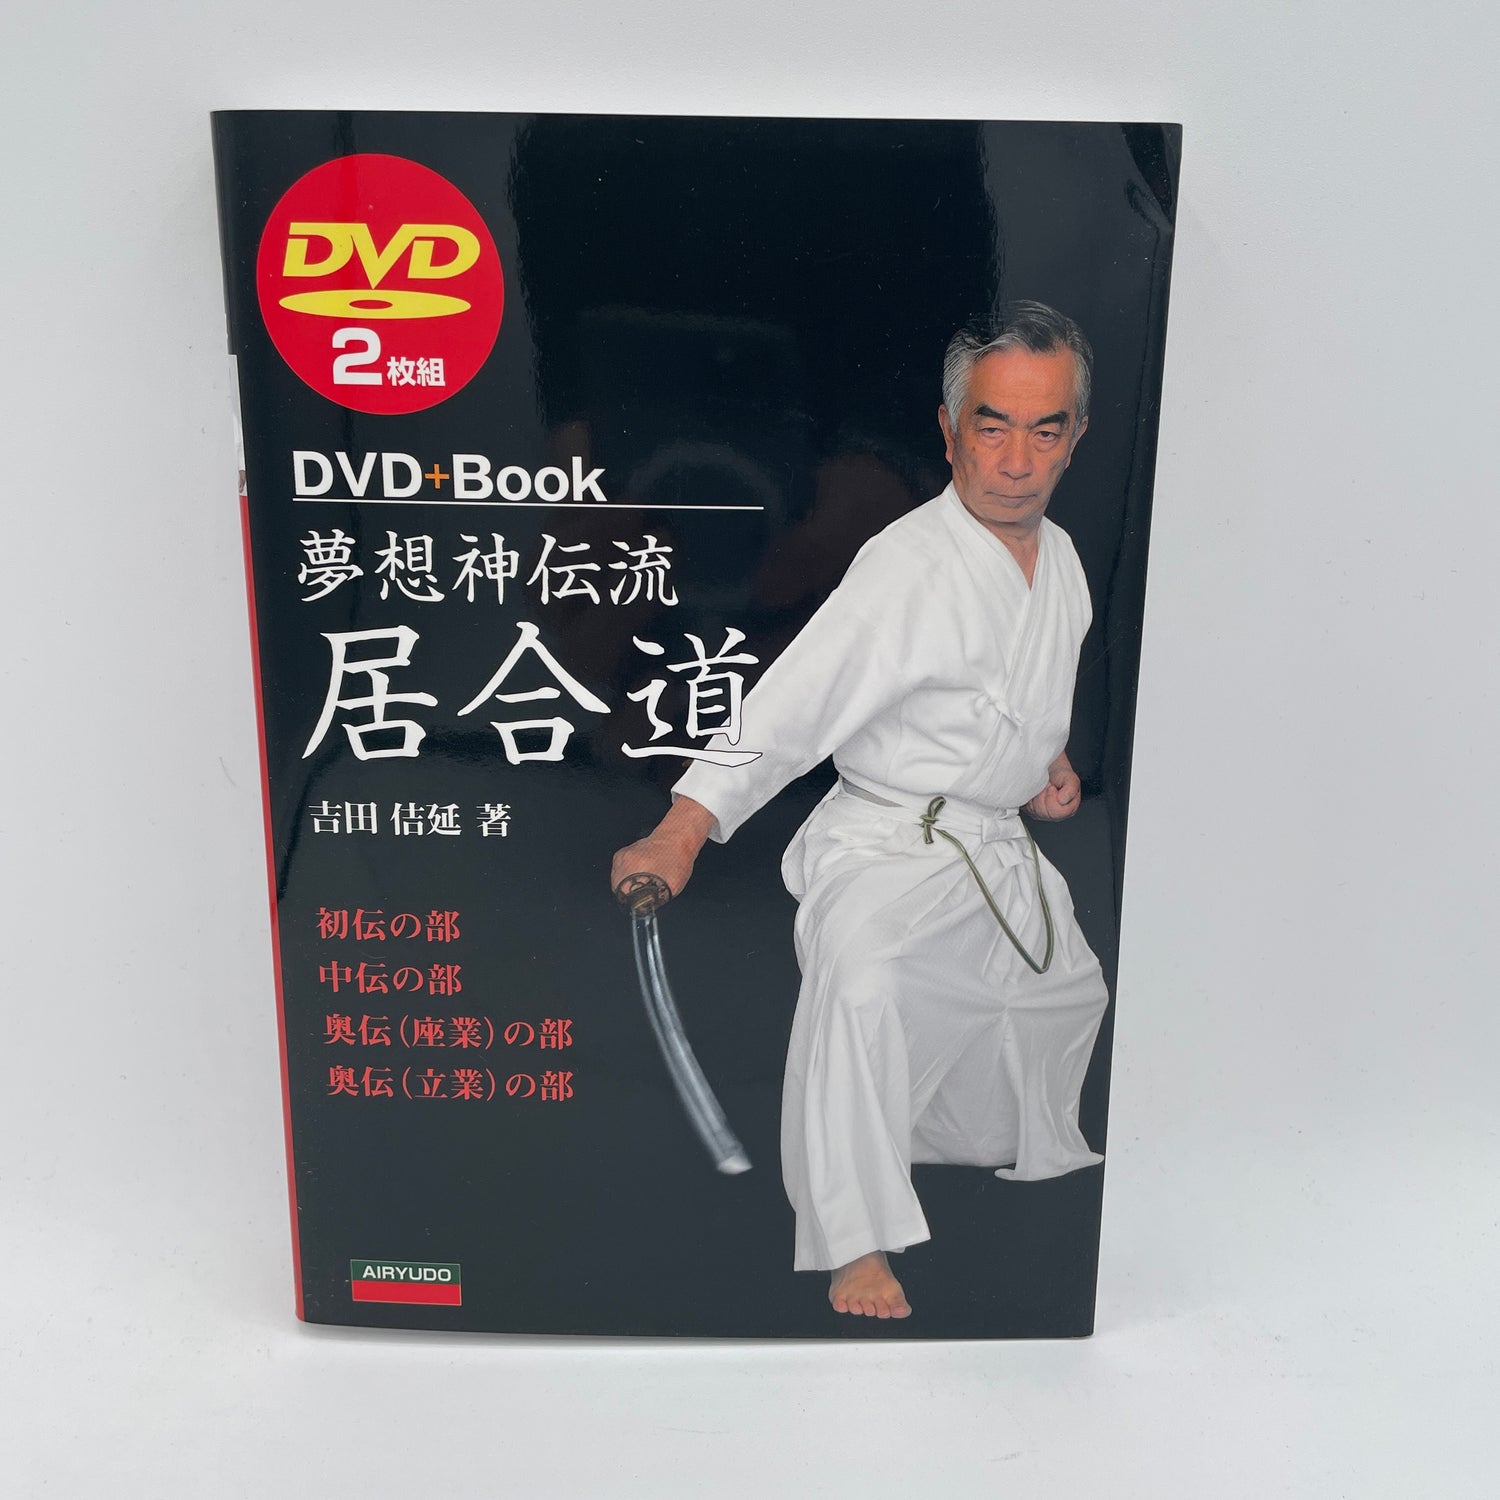 Muso Shinden Ryu Iaido Libro y DVD de Yoshinobu Yoshida